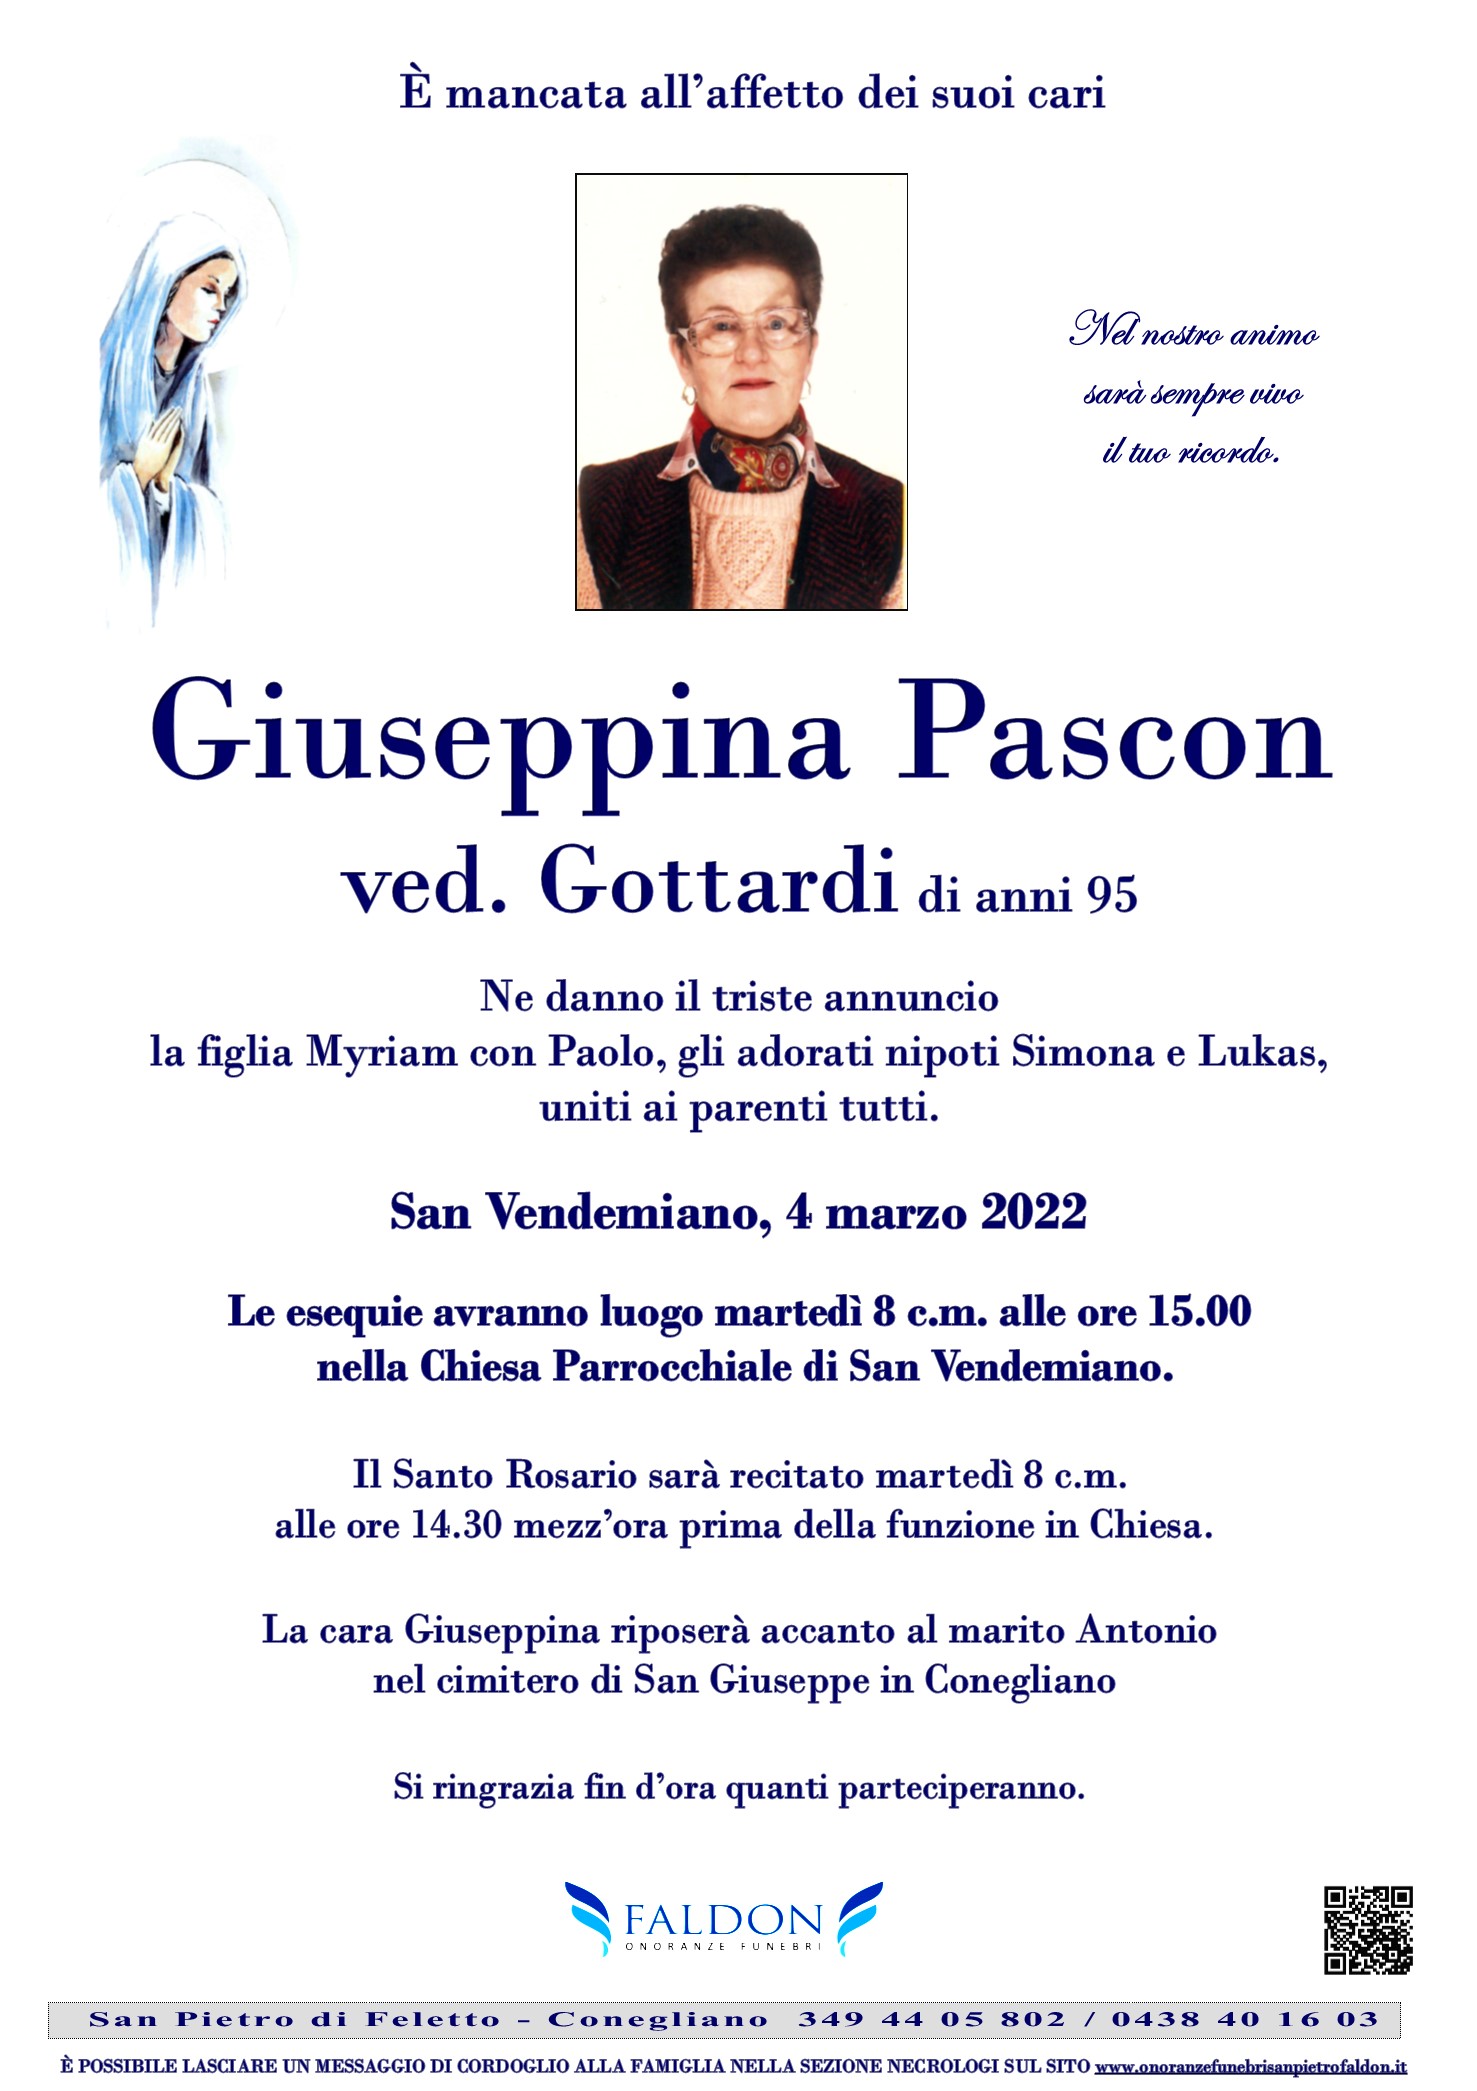 Giuseppina Pascon